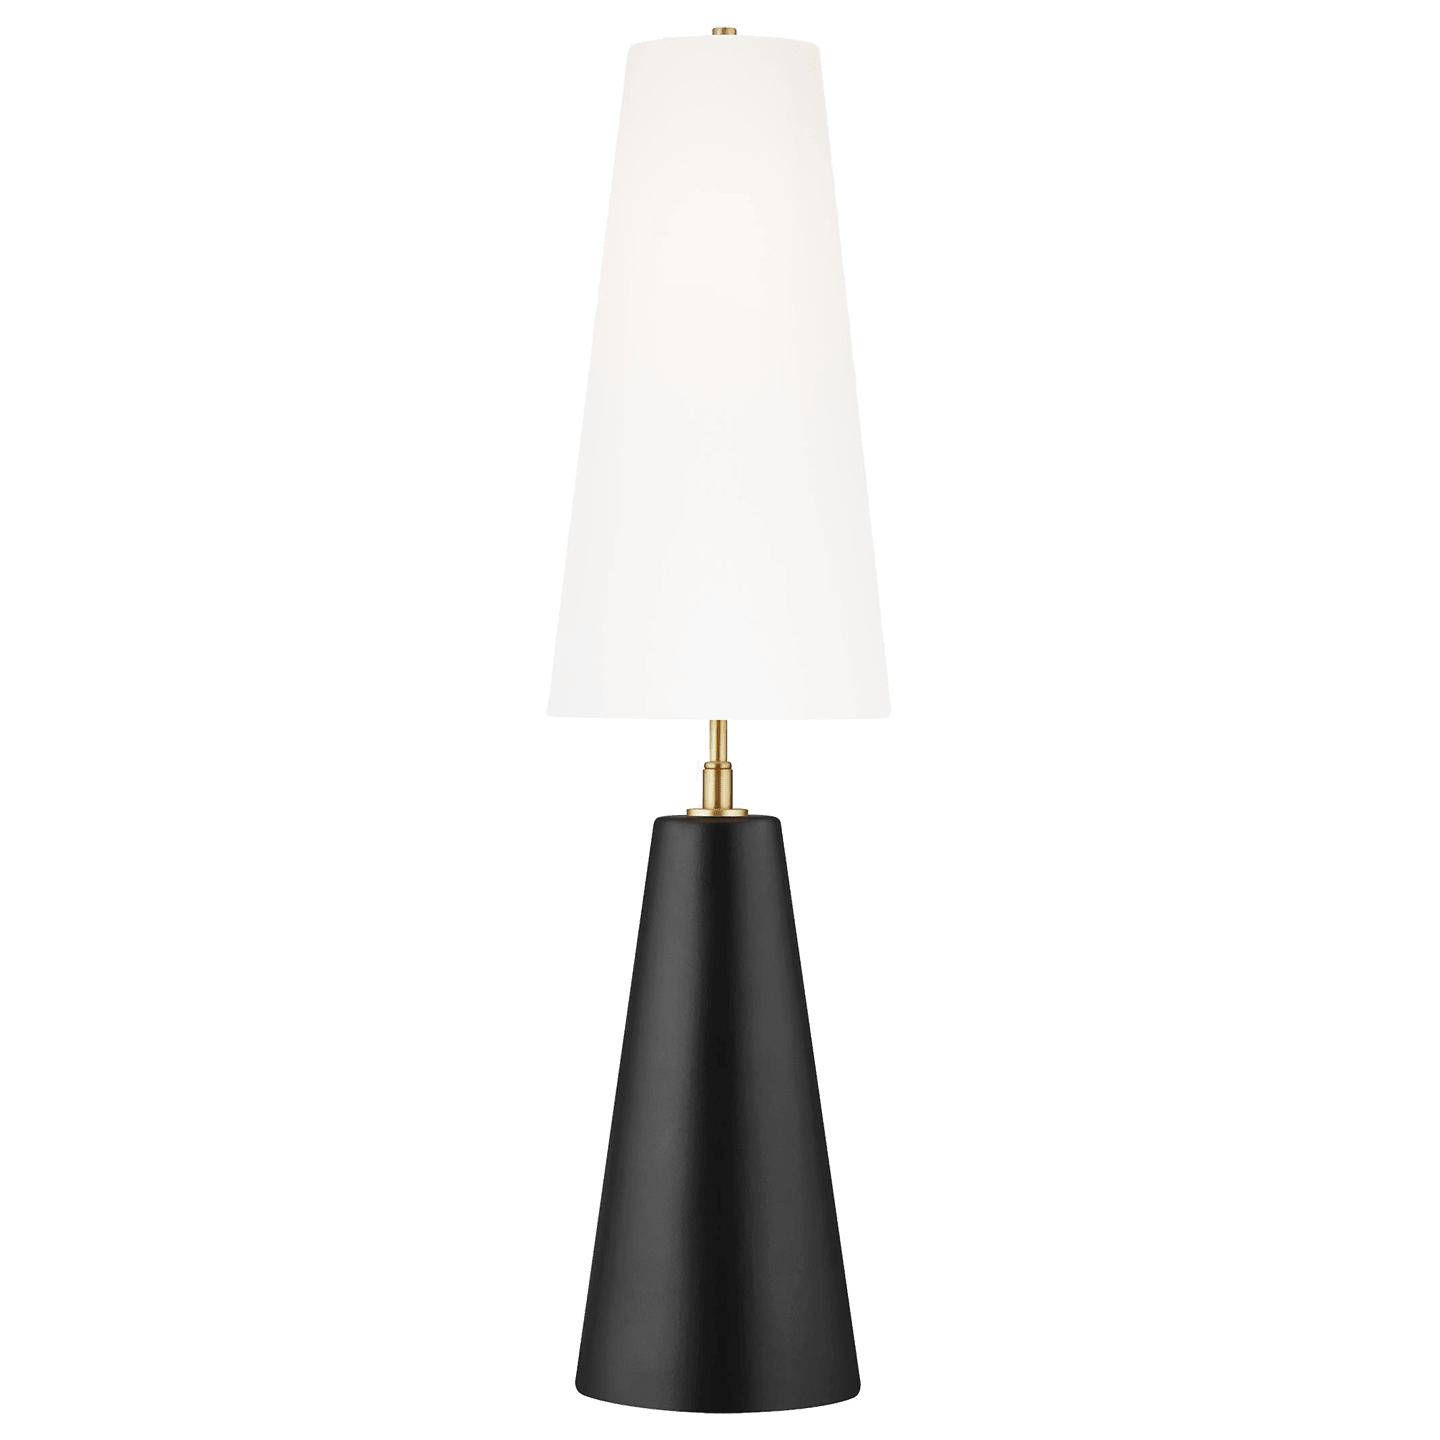 Купить Настольная лампа Lorne Table Lamp в интернет-магазине roooms.ru